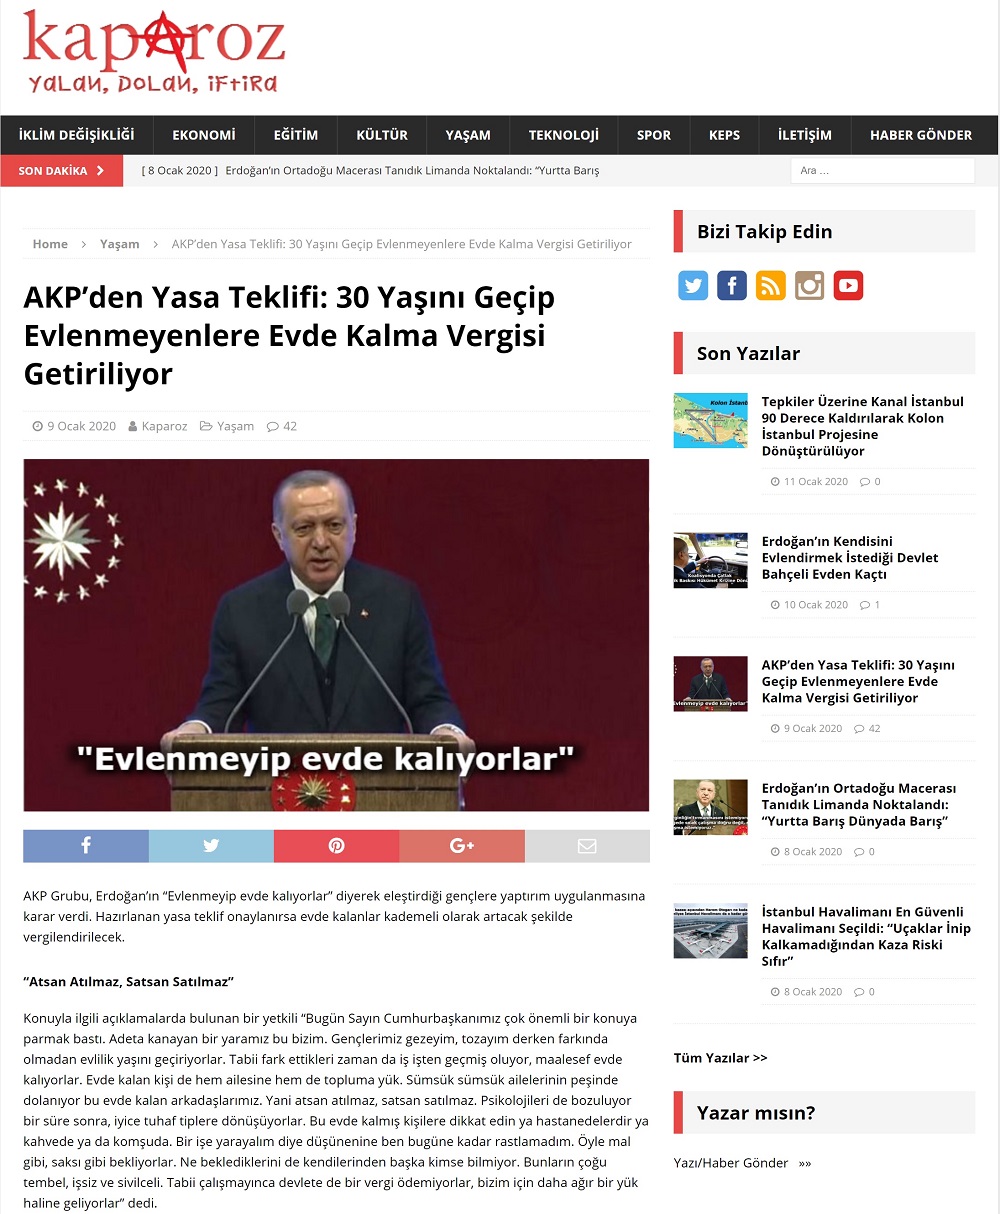 Kaparoz.com'un "AKP’den Yasa Teklifi: 30 Yaşını Geçip Evlenmeyenlere Evde Kalma Vergisi Getiriliyor" başlıklı parodi haberi